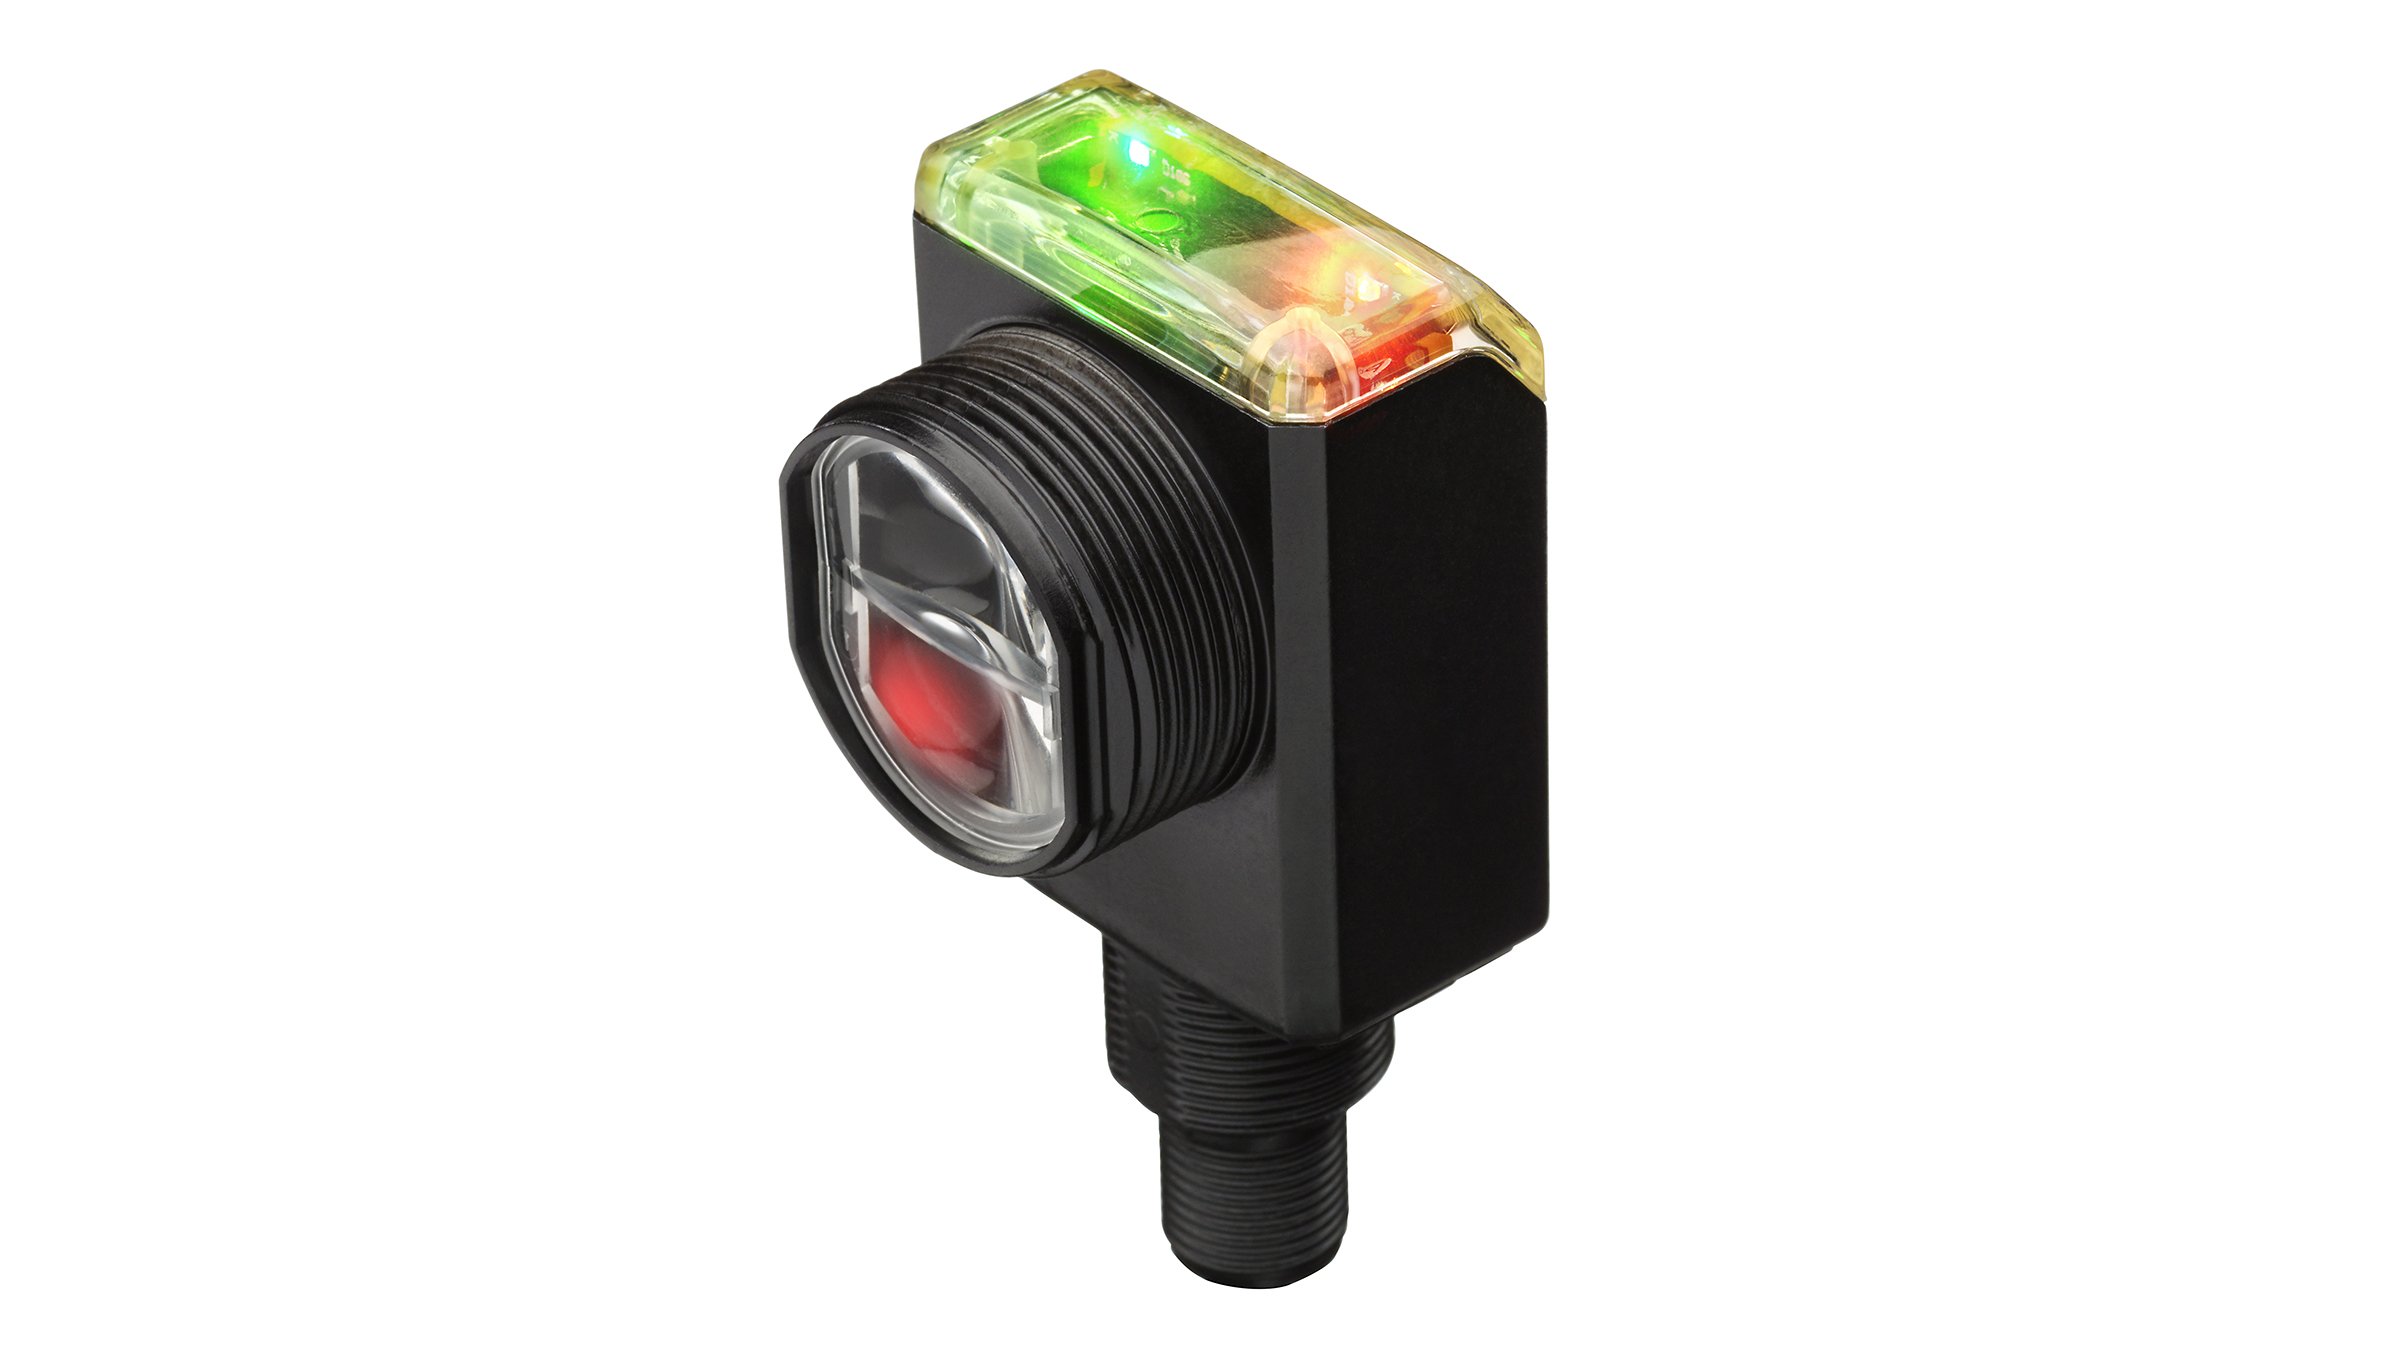 Sensor retangular preto com o cabeçote do sensor na frente e o indicador LED vermelho e verde na parte superior